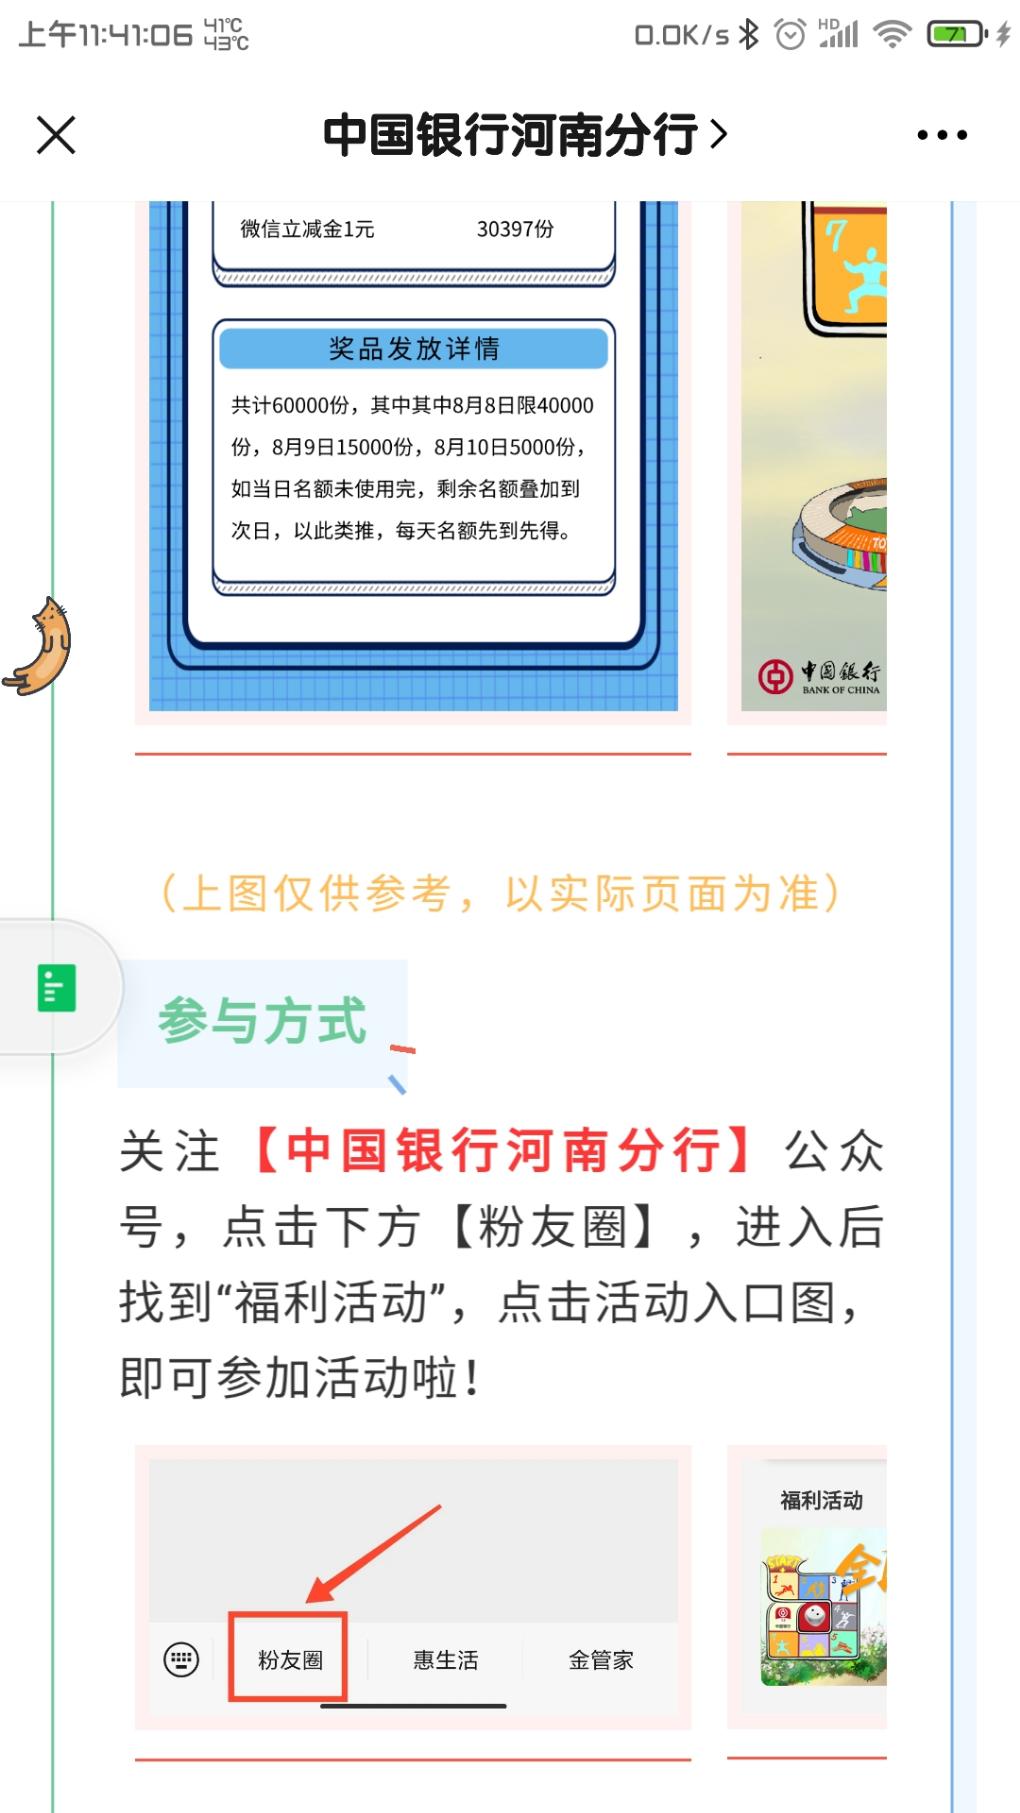 中国银行河南分行活动-惠小助(52huixz.com)